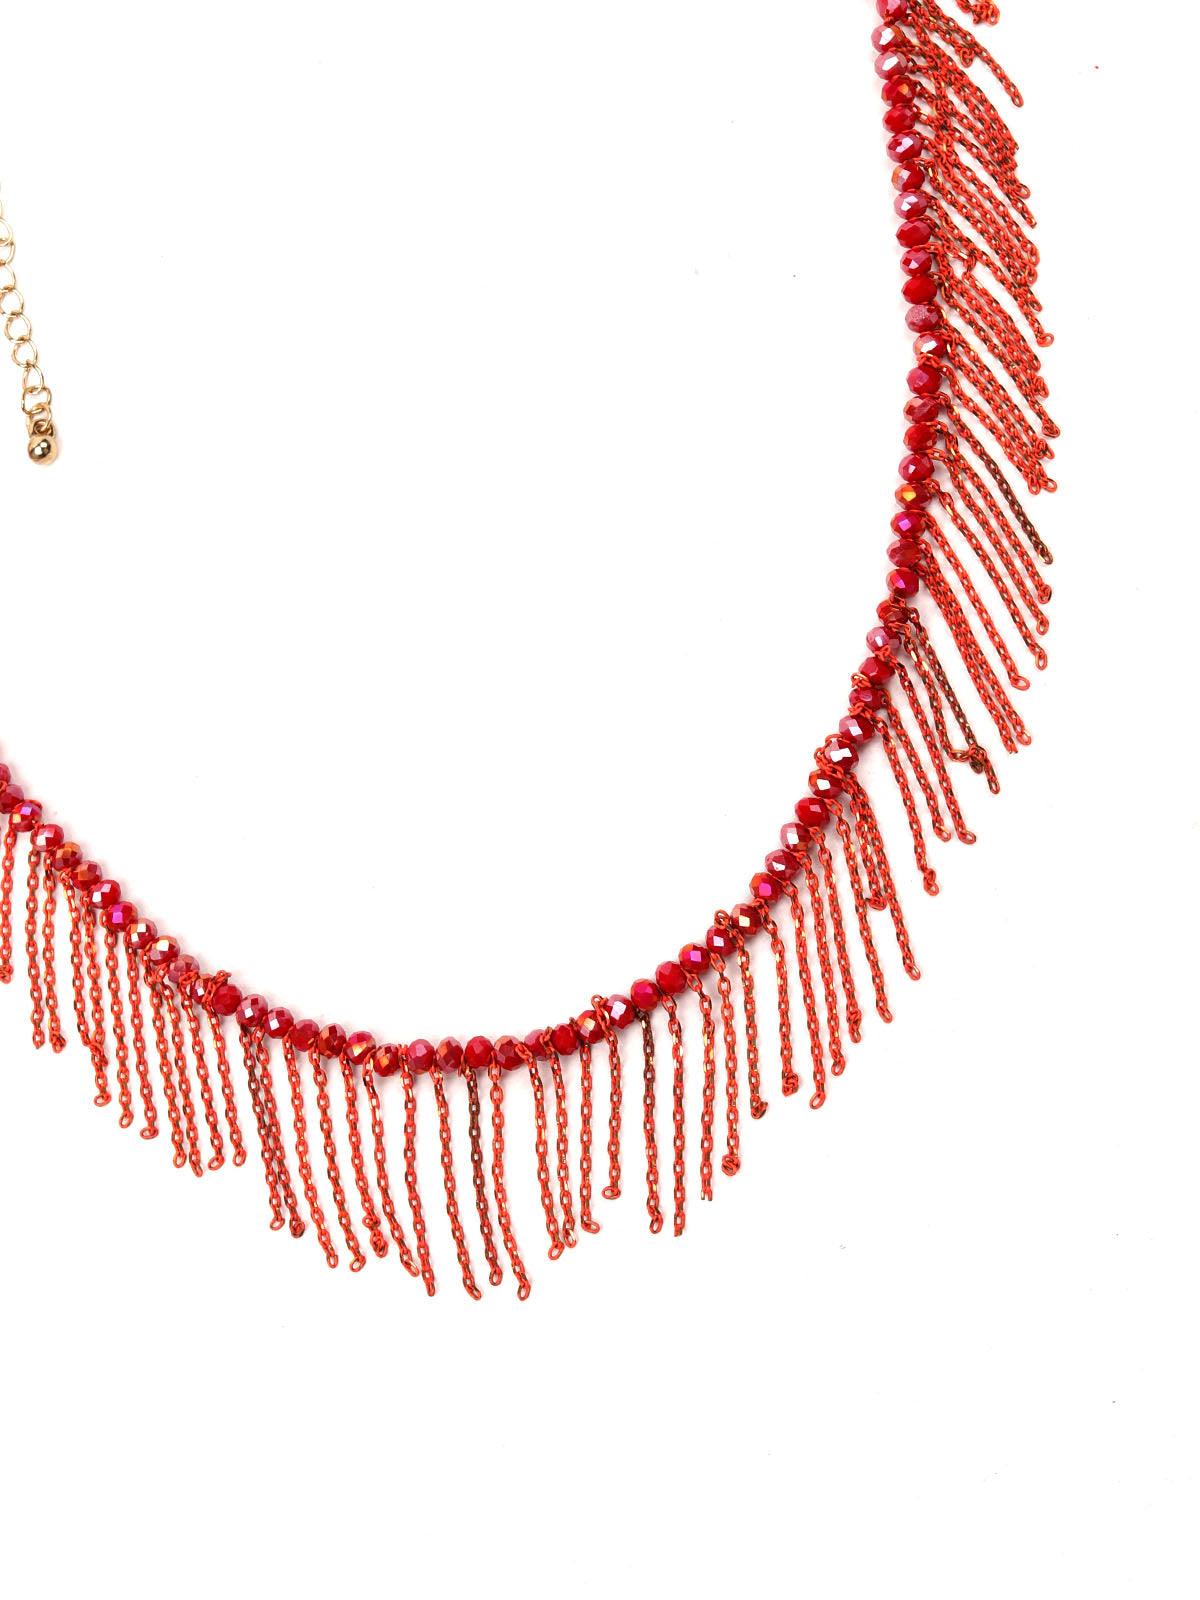 Red beaded necklace with fringes design detailing - Odette